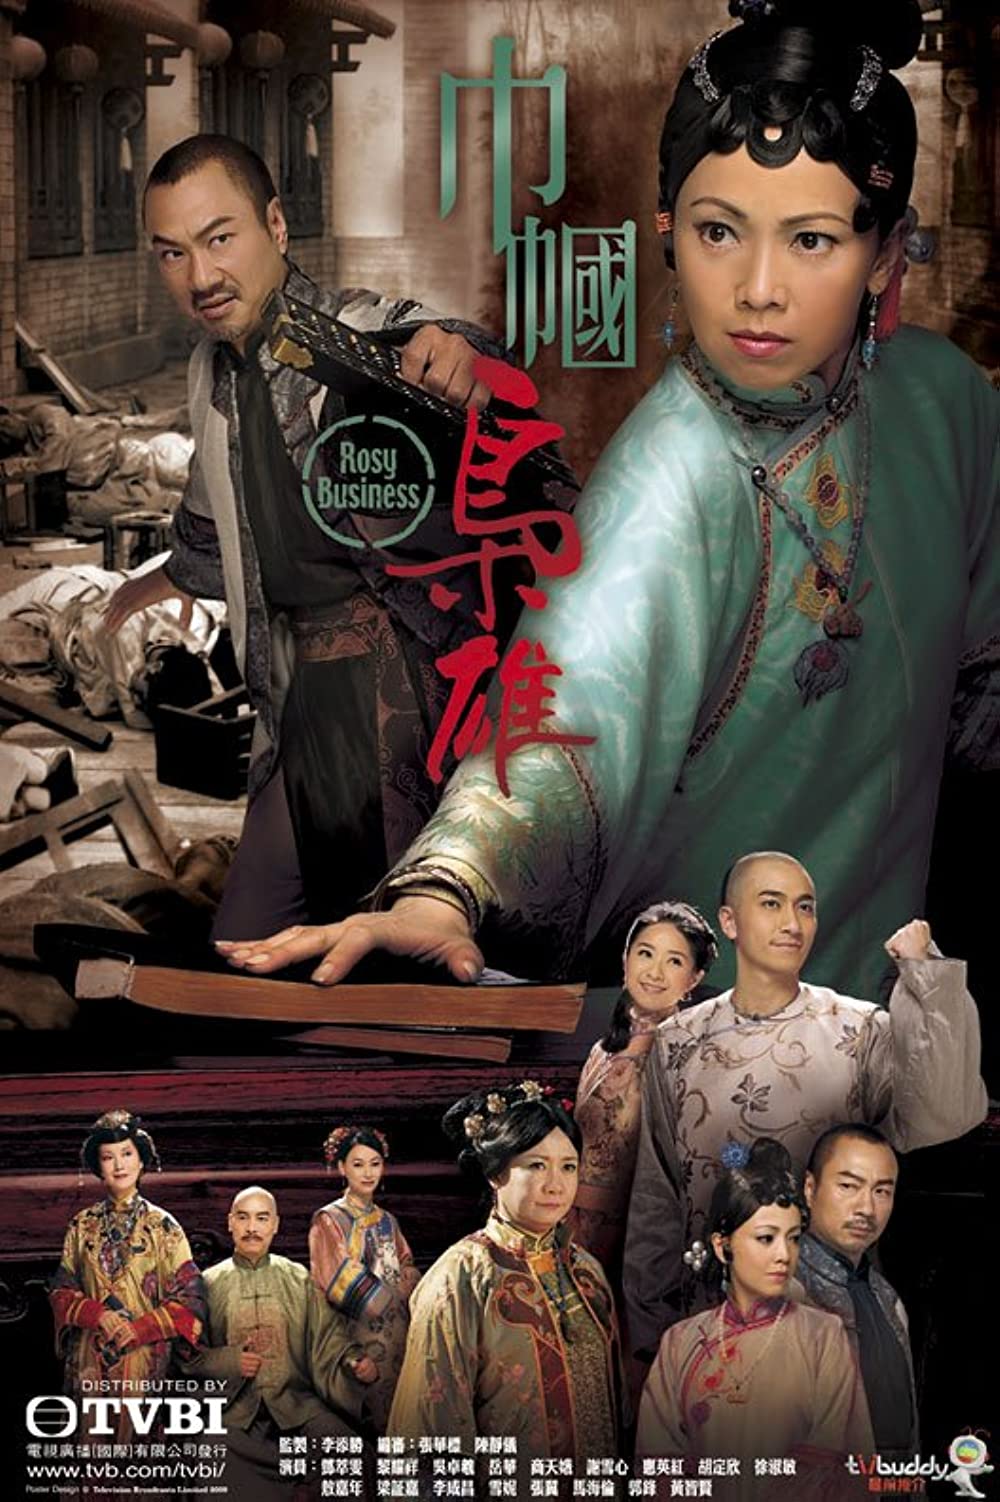 ดูหนังออนไลน์ฟรี Rosy Business (Gan gwok hiu hung) saeson1 (2009) EP.25 (END) ยอดหญิงจอมทรนง ภาค1 ตอนที่ 25 (พากย์ไทย)